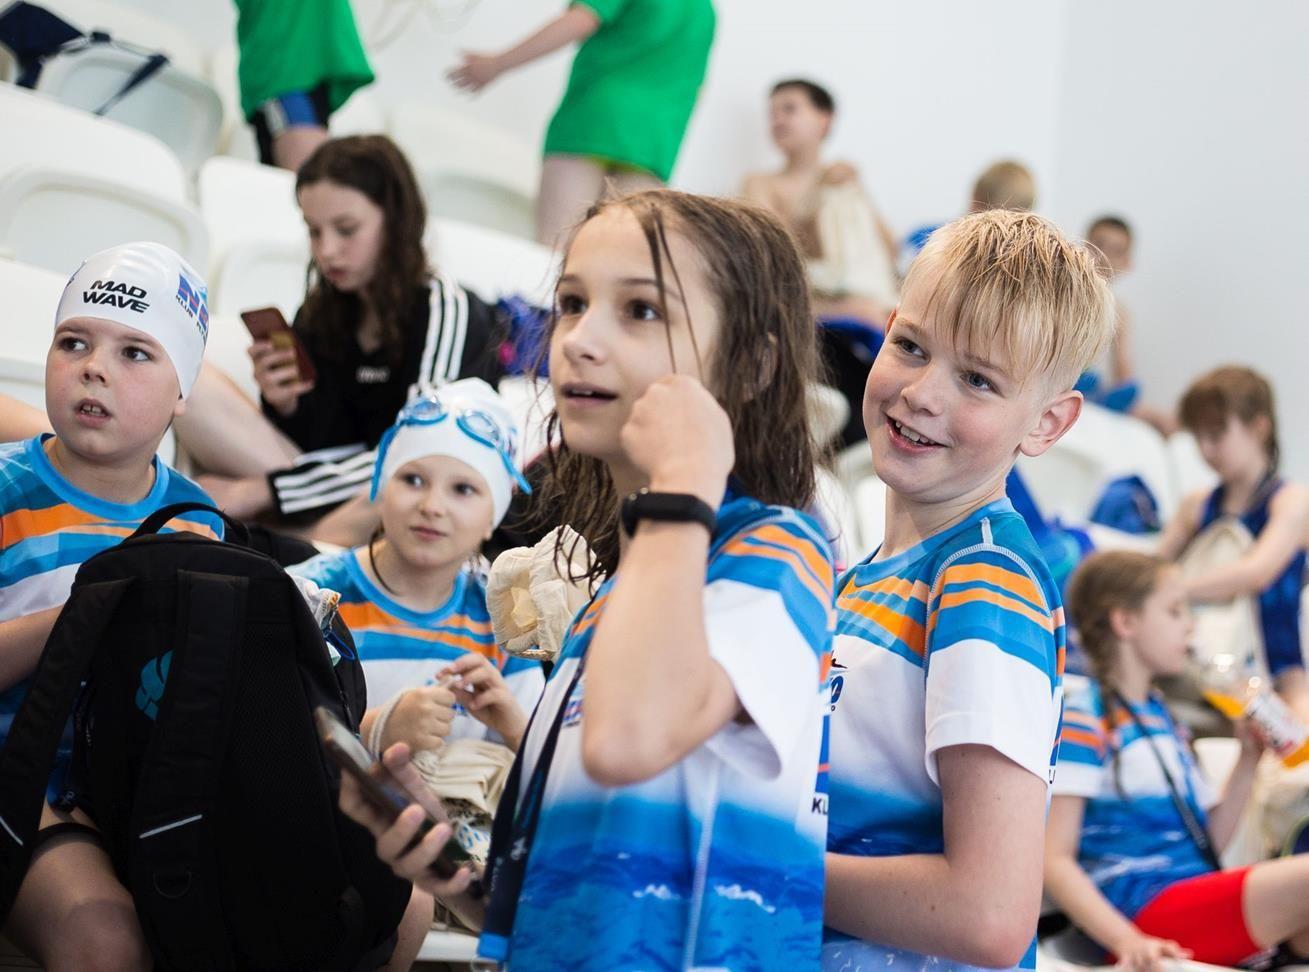 Ogólnopolskie zawody pływackie Otylia Swim Cup w Toruniu - kliknięcie spowoduje powiększenie obrazka